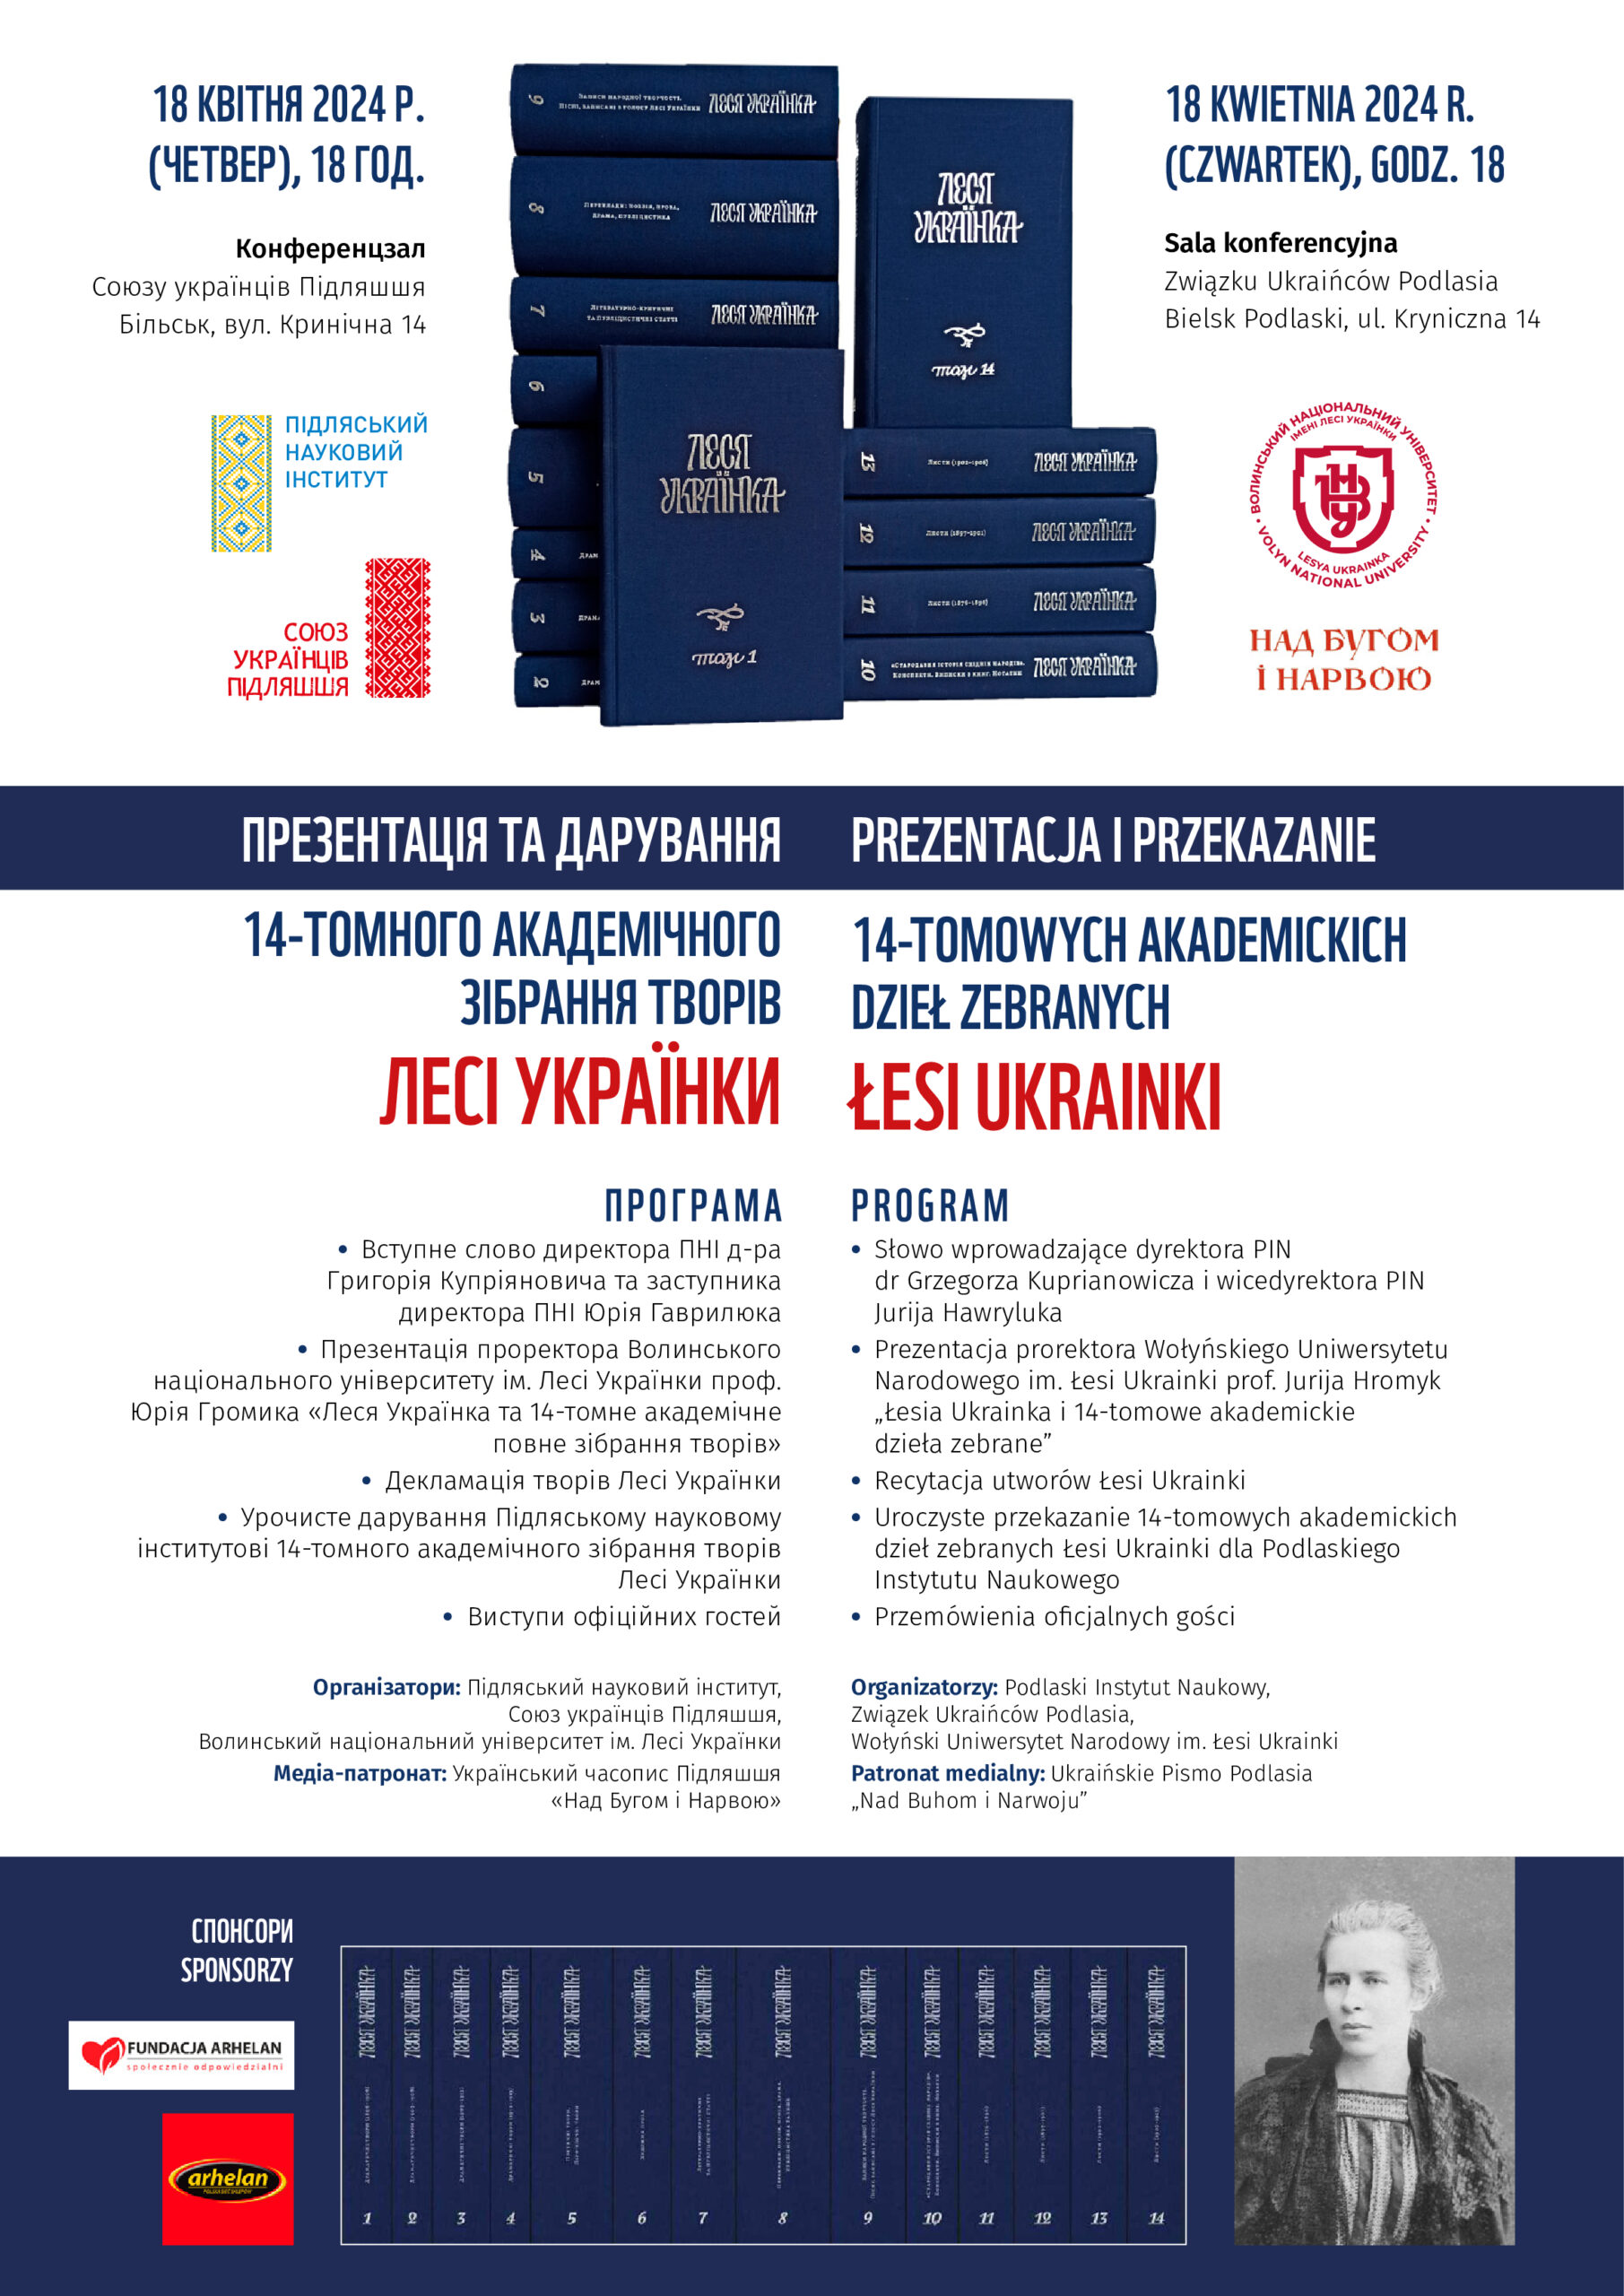 Za trzy dni w Bielsku prezentacja 14-tomowych dzieł zebranych Łesi Ukrainki